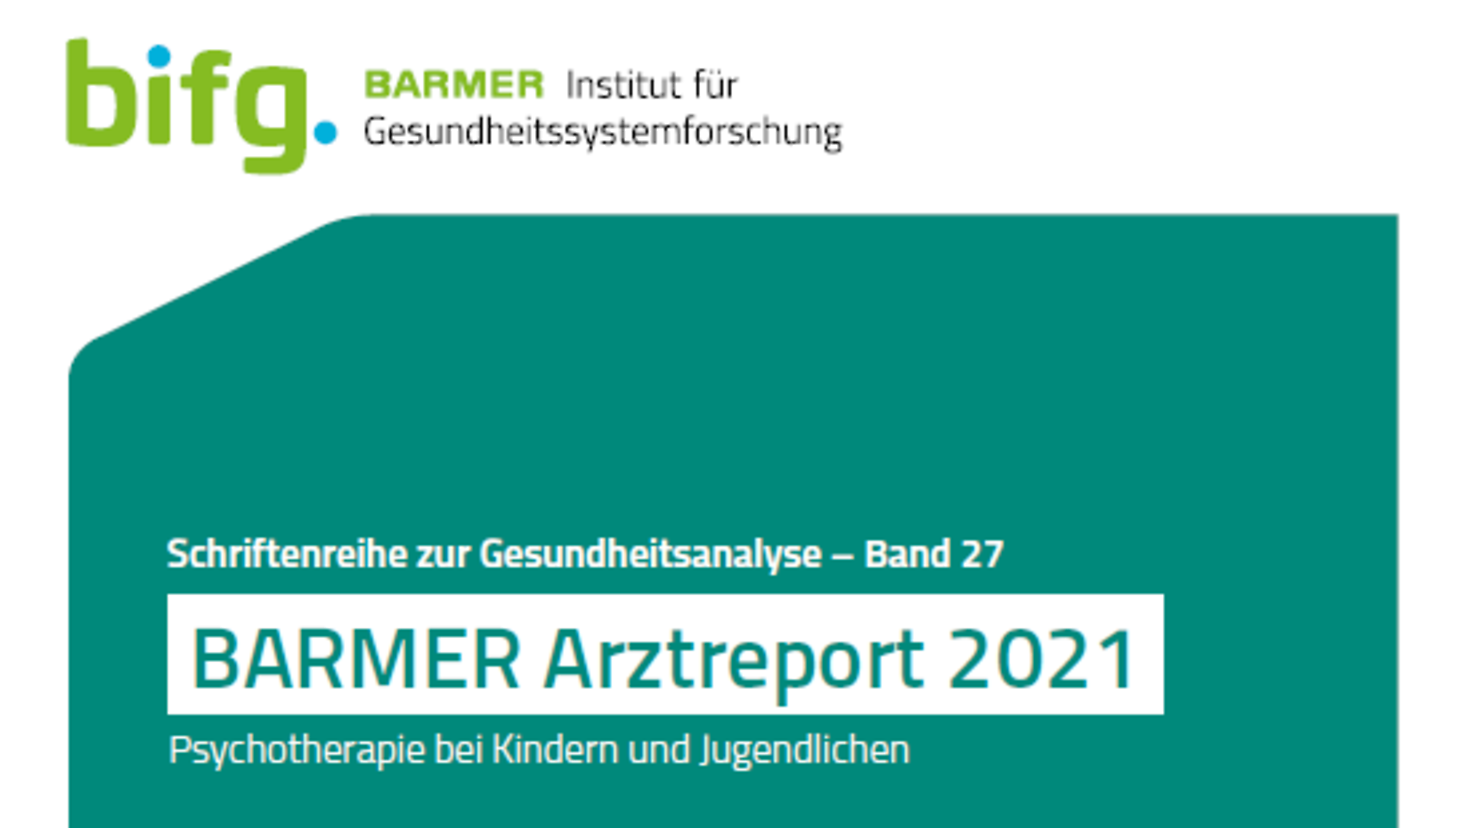 Das Bild zeigt das Deckblatt des Barmer Arztreports 2021.